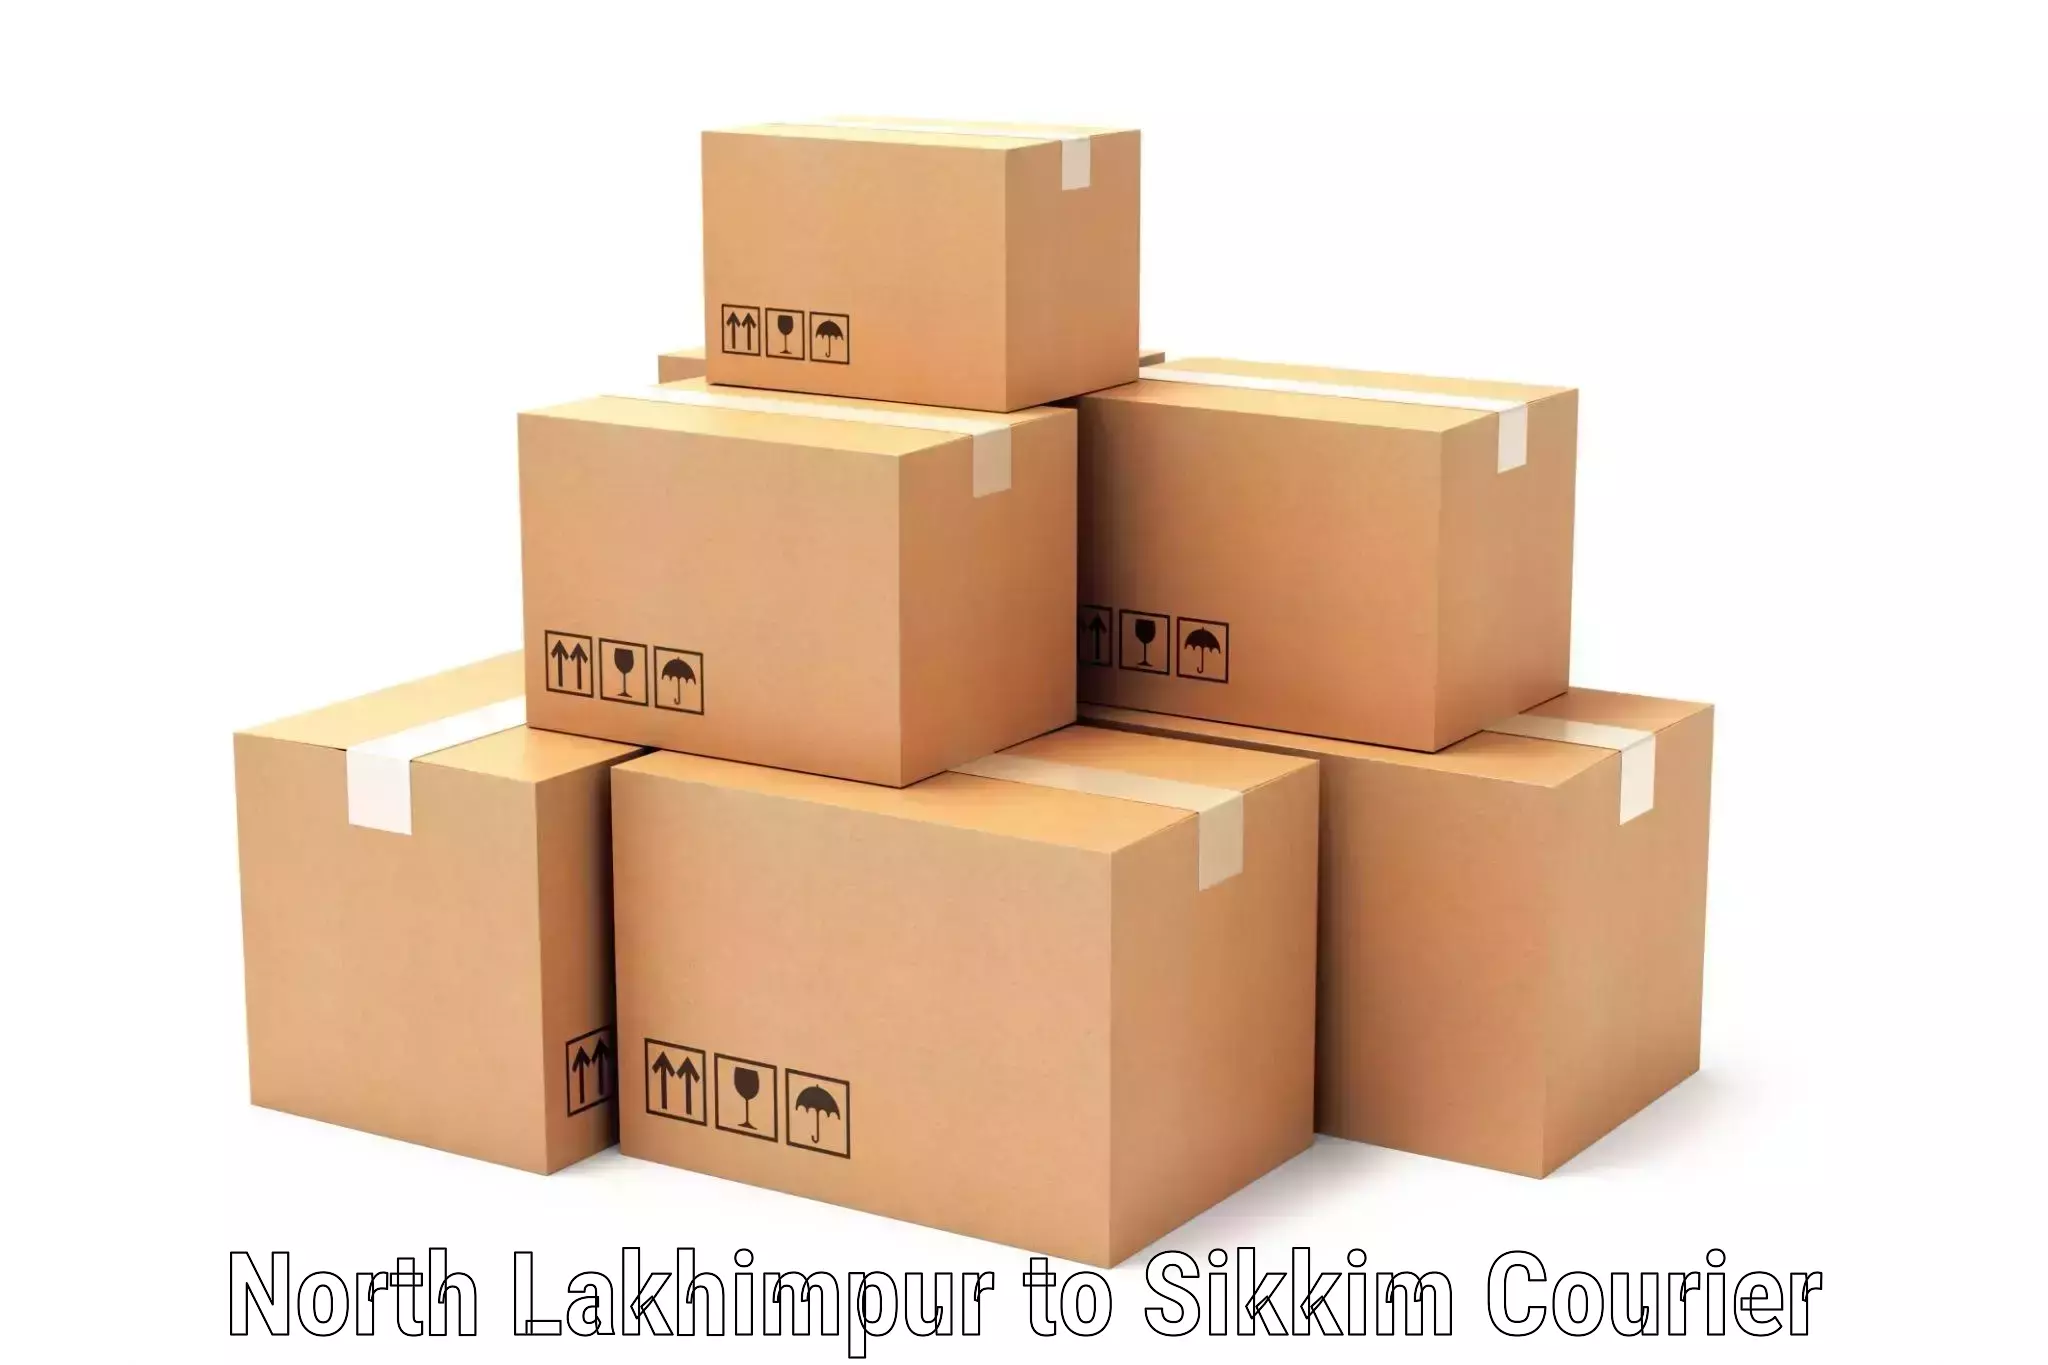 Efficient parcel tracking North Lakhimpur to Mangan